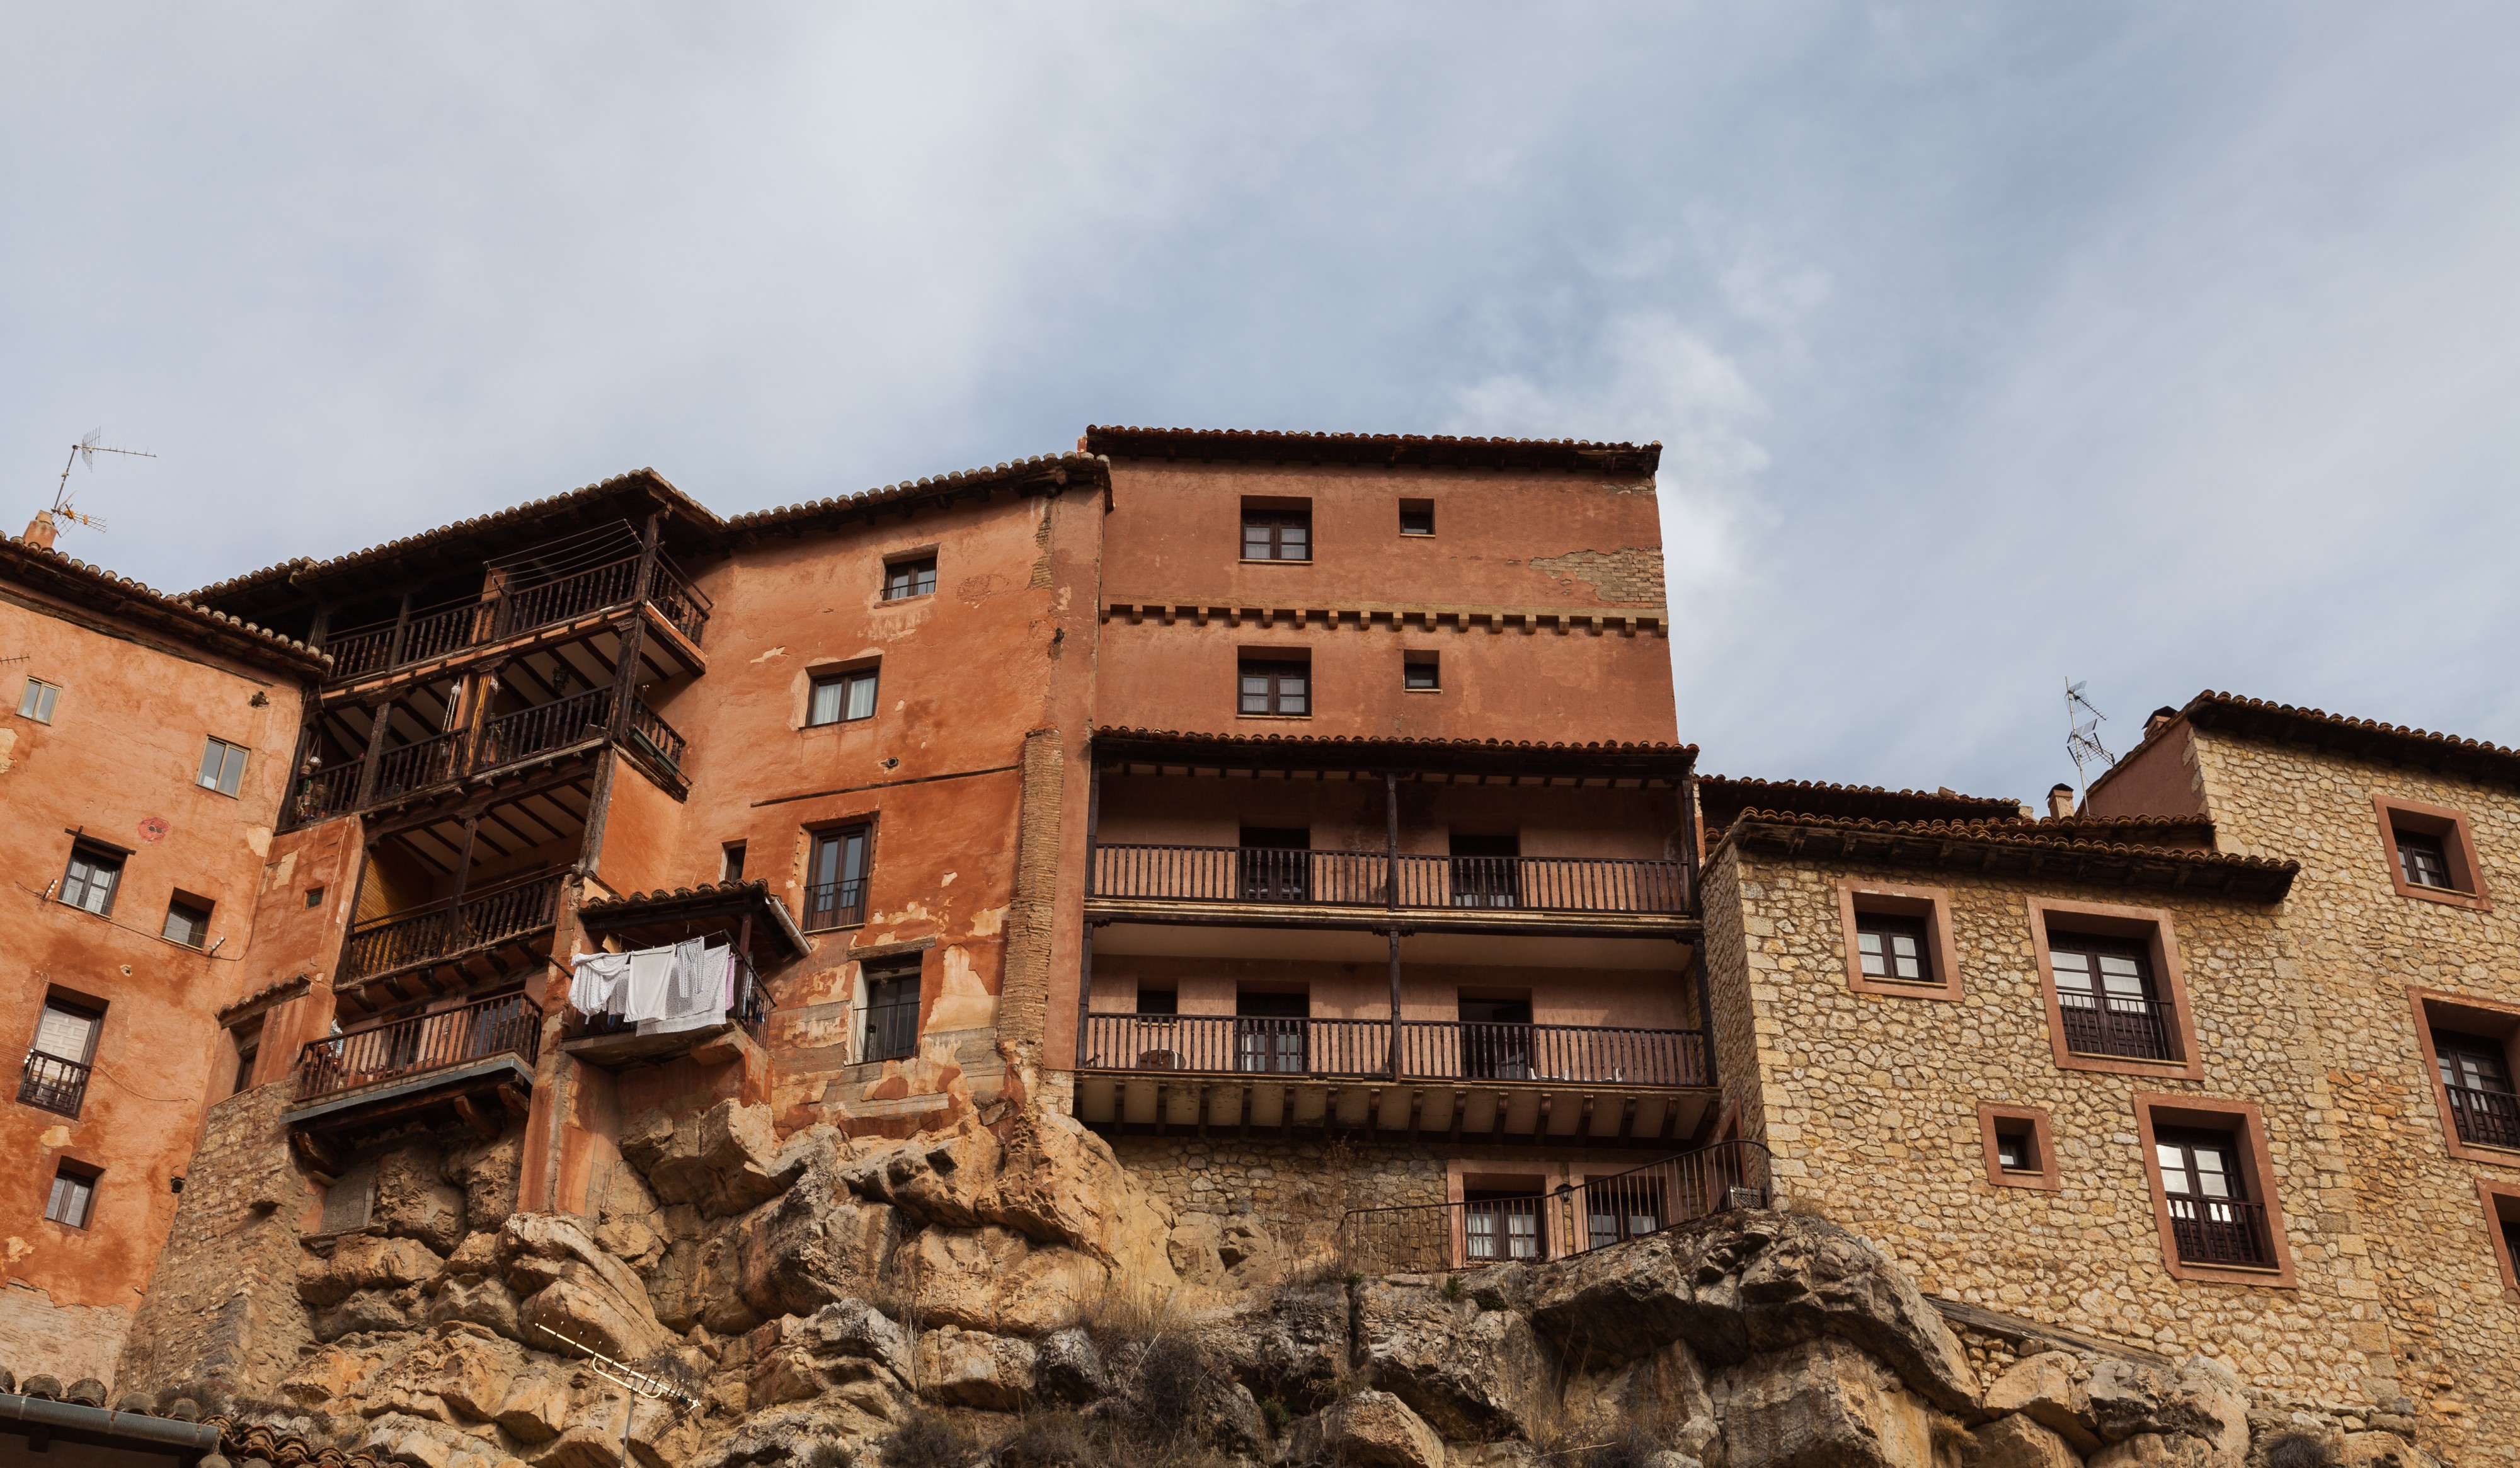 Albarracín, Teruel, España, 2014-01-10, DD 146